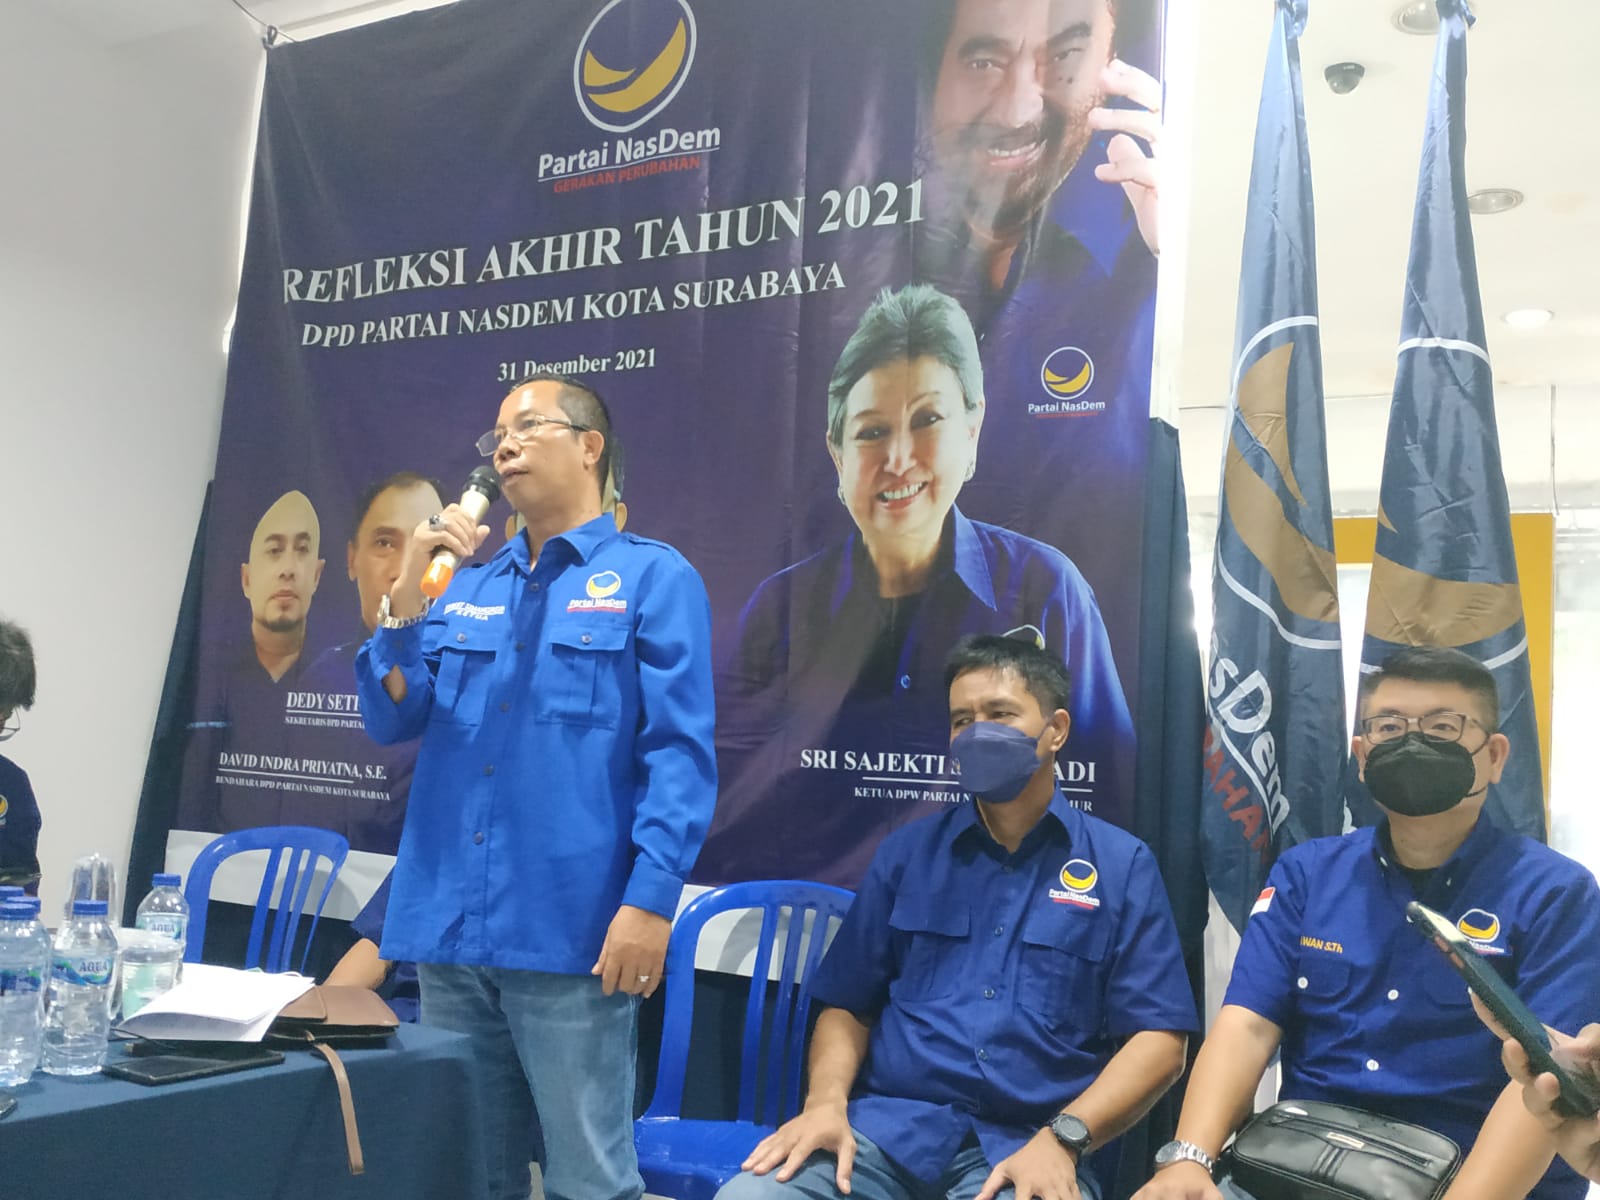 Refleksi Akhir Tahun Partai NasDem Surabaya, Bahas Berbagai Persoalan Kota